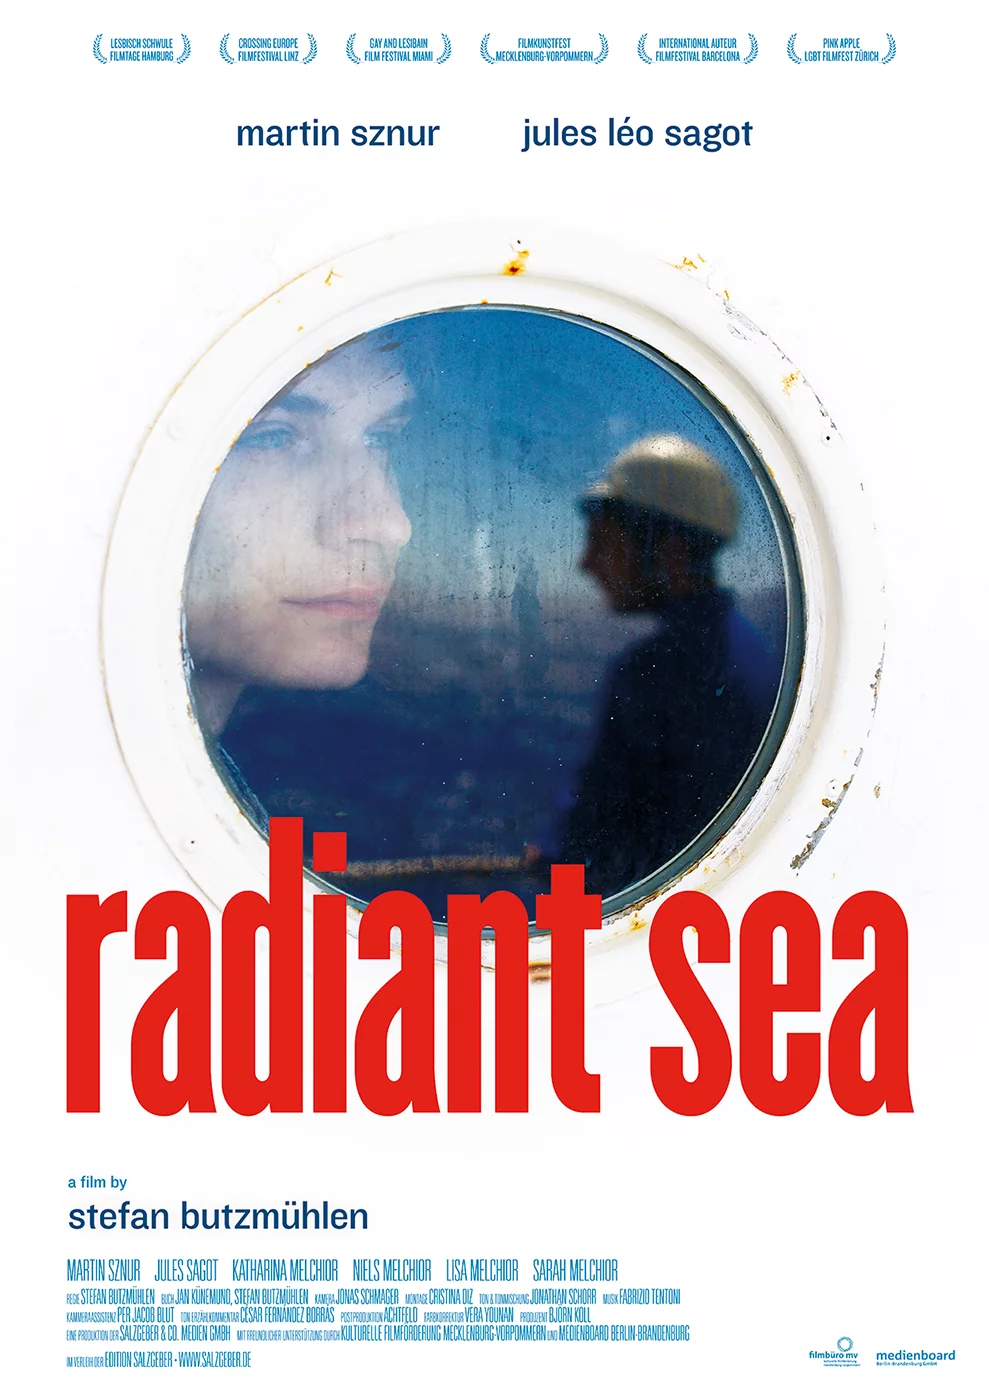 Radiant Sea